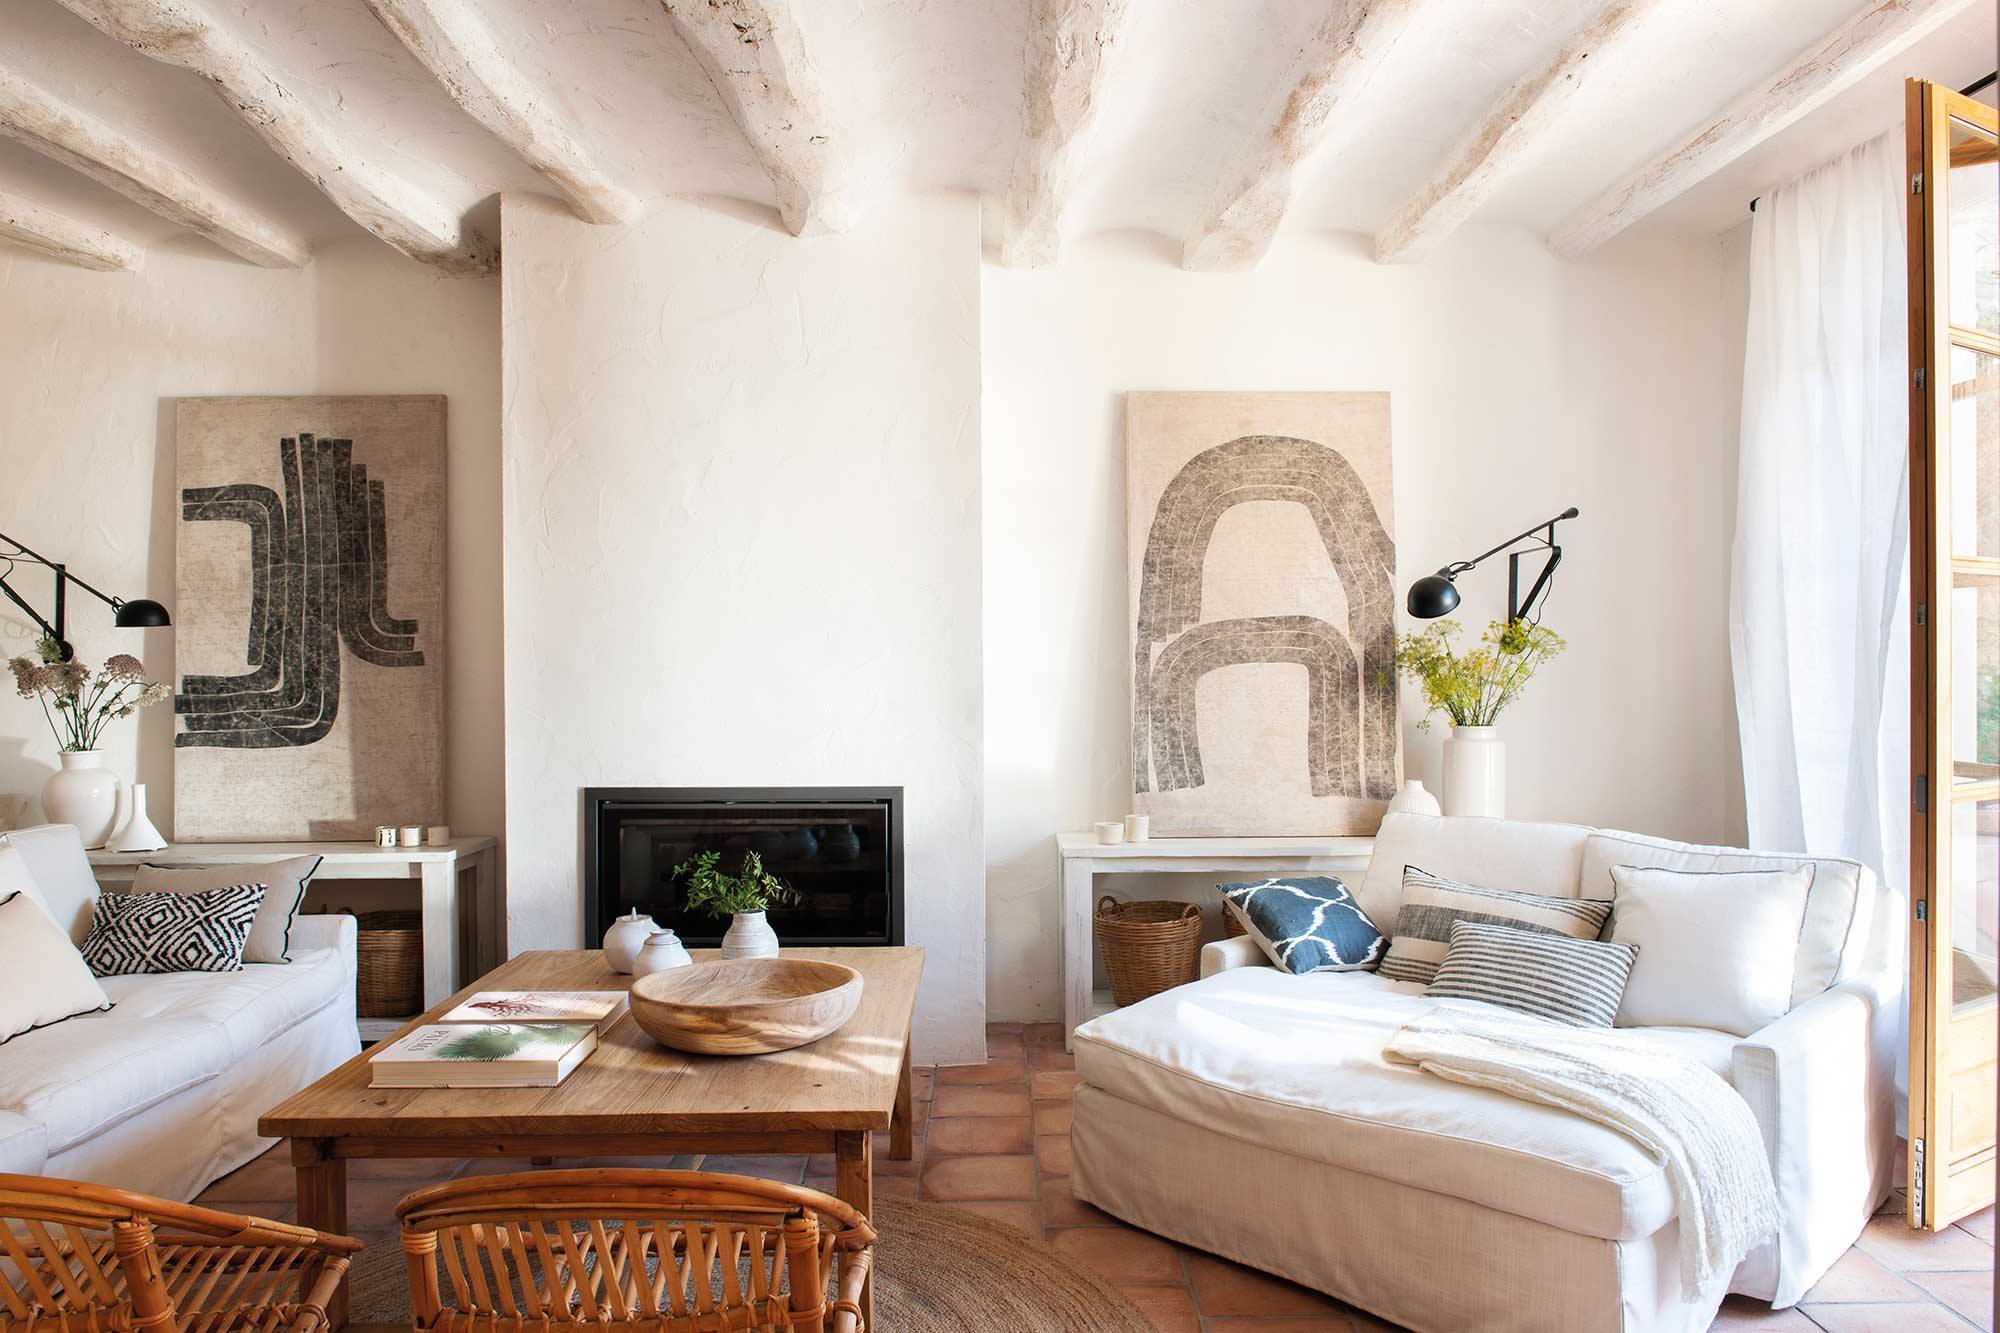 Salón nórdico con vigas blancas en el techo, chaise longue y cuadros de Walter Arias.